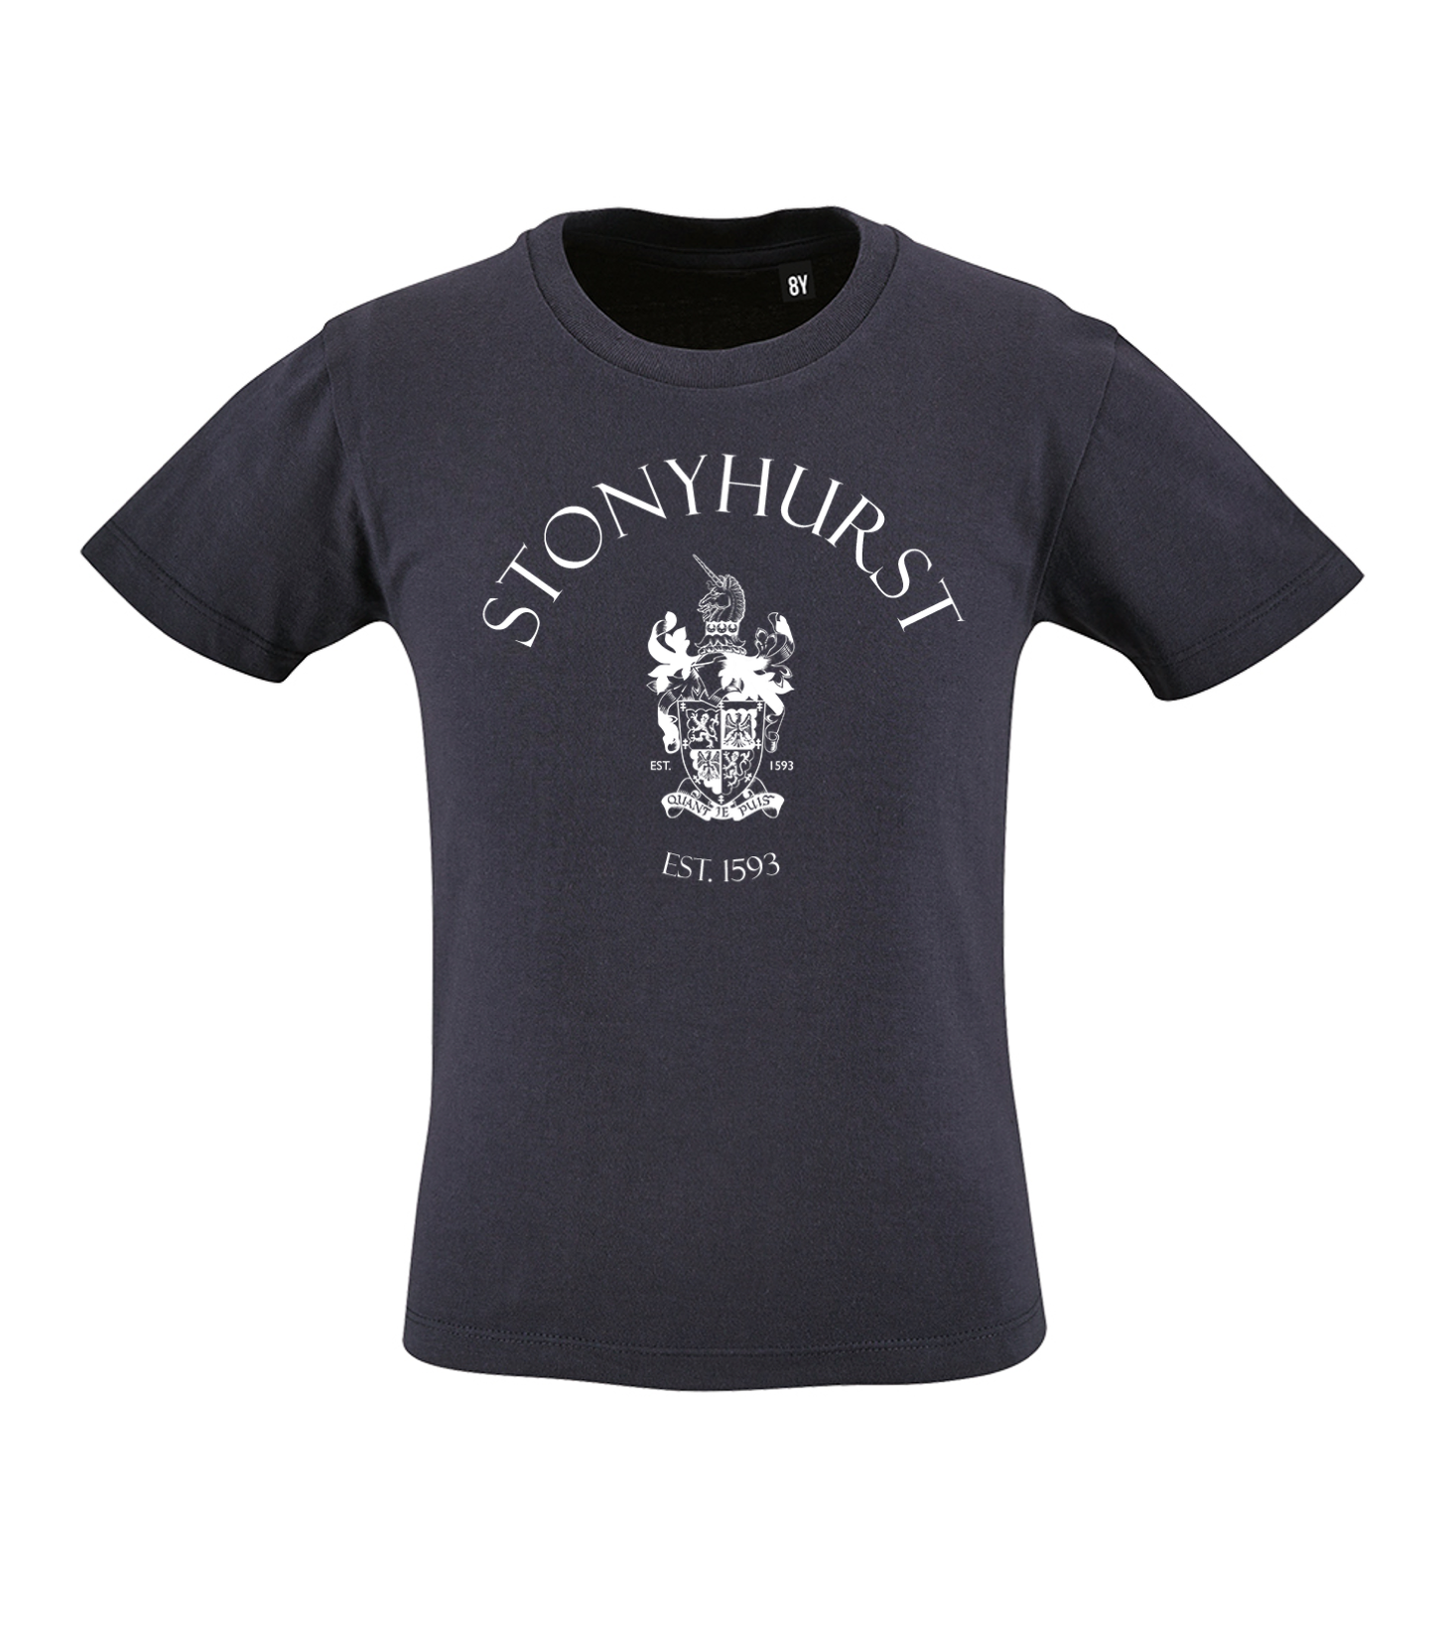 Stonyhurst White Logo Navy Organic T-Shirt (Childrens)